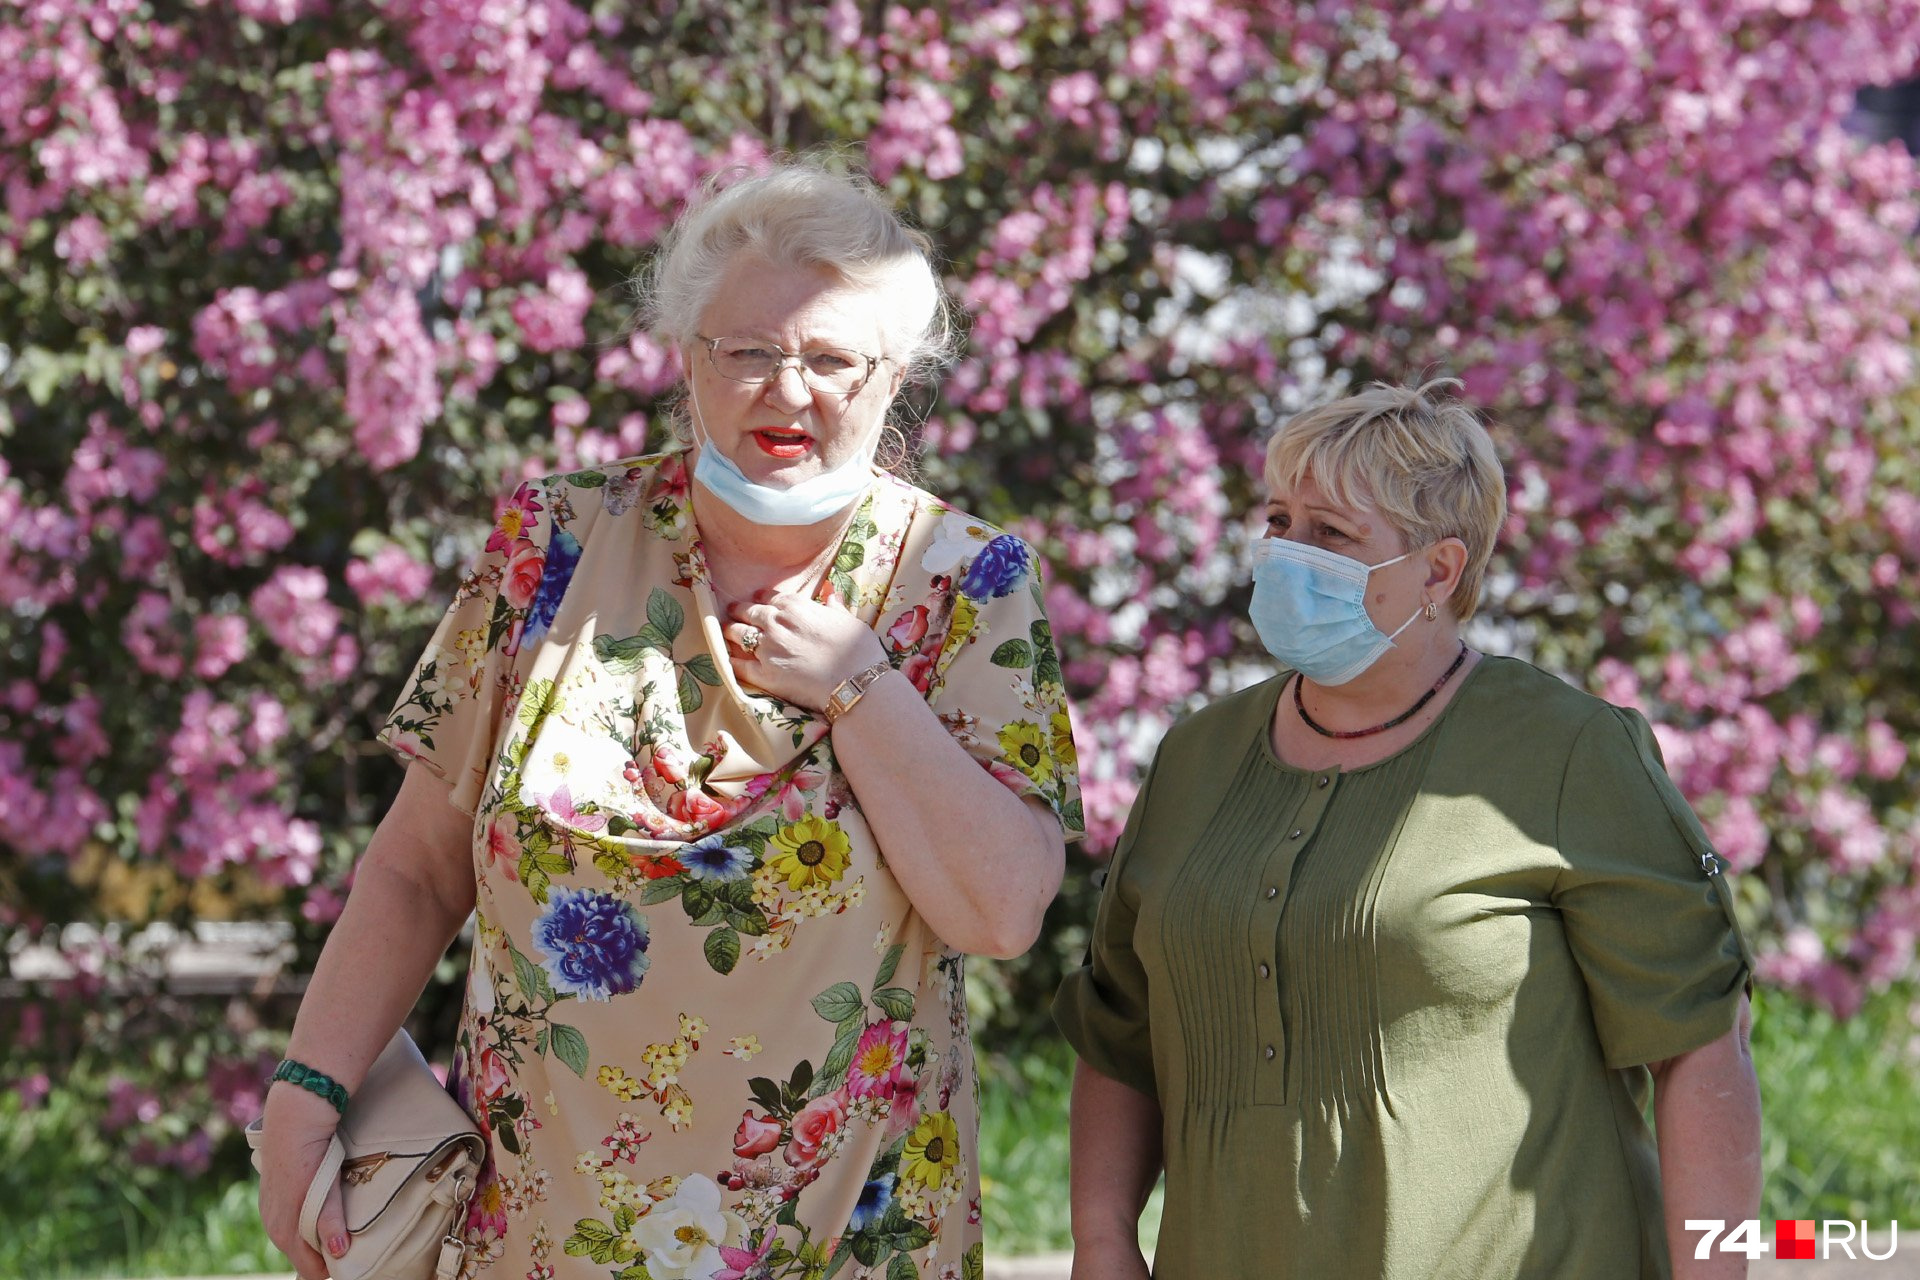 Пожилые люди всё чаще носят маску на подбородке на манер оберега